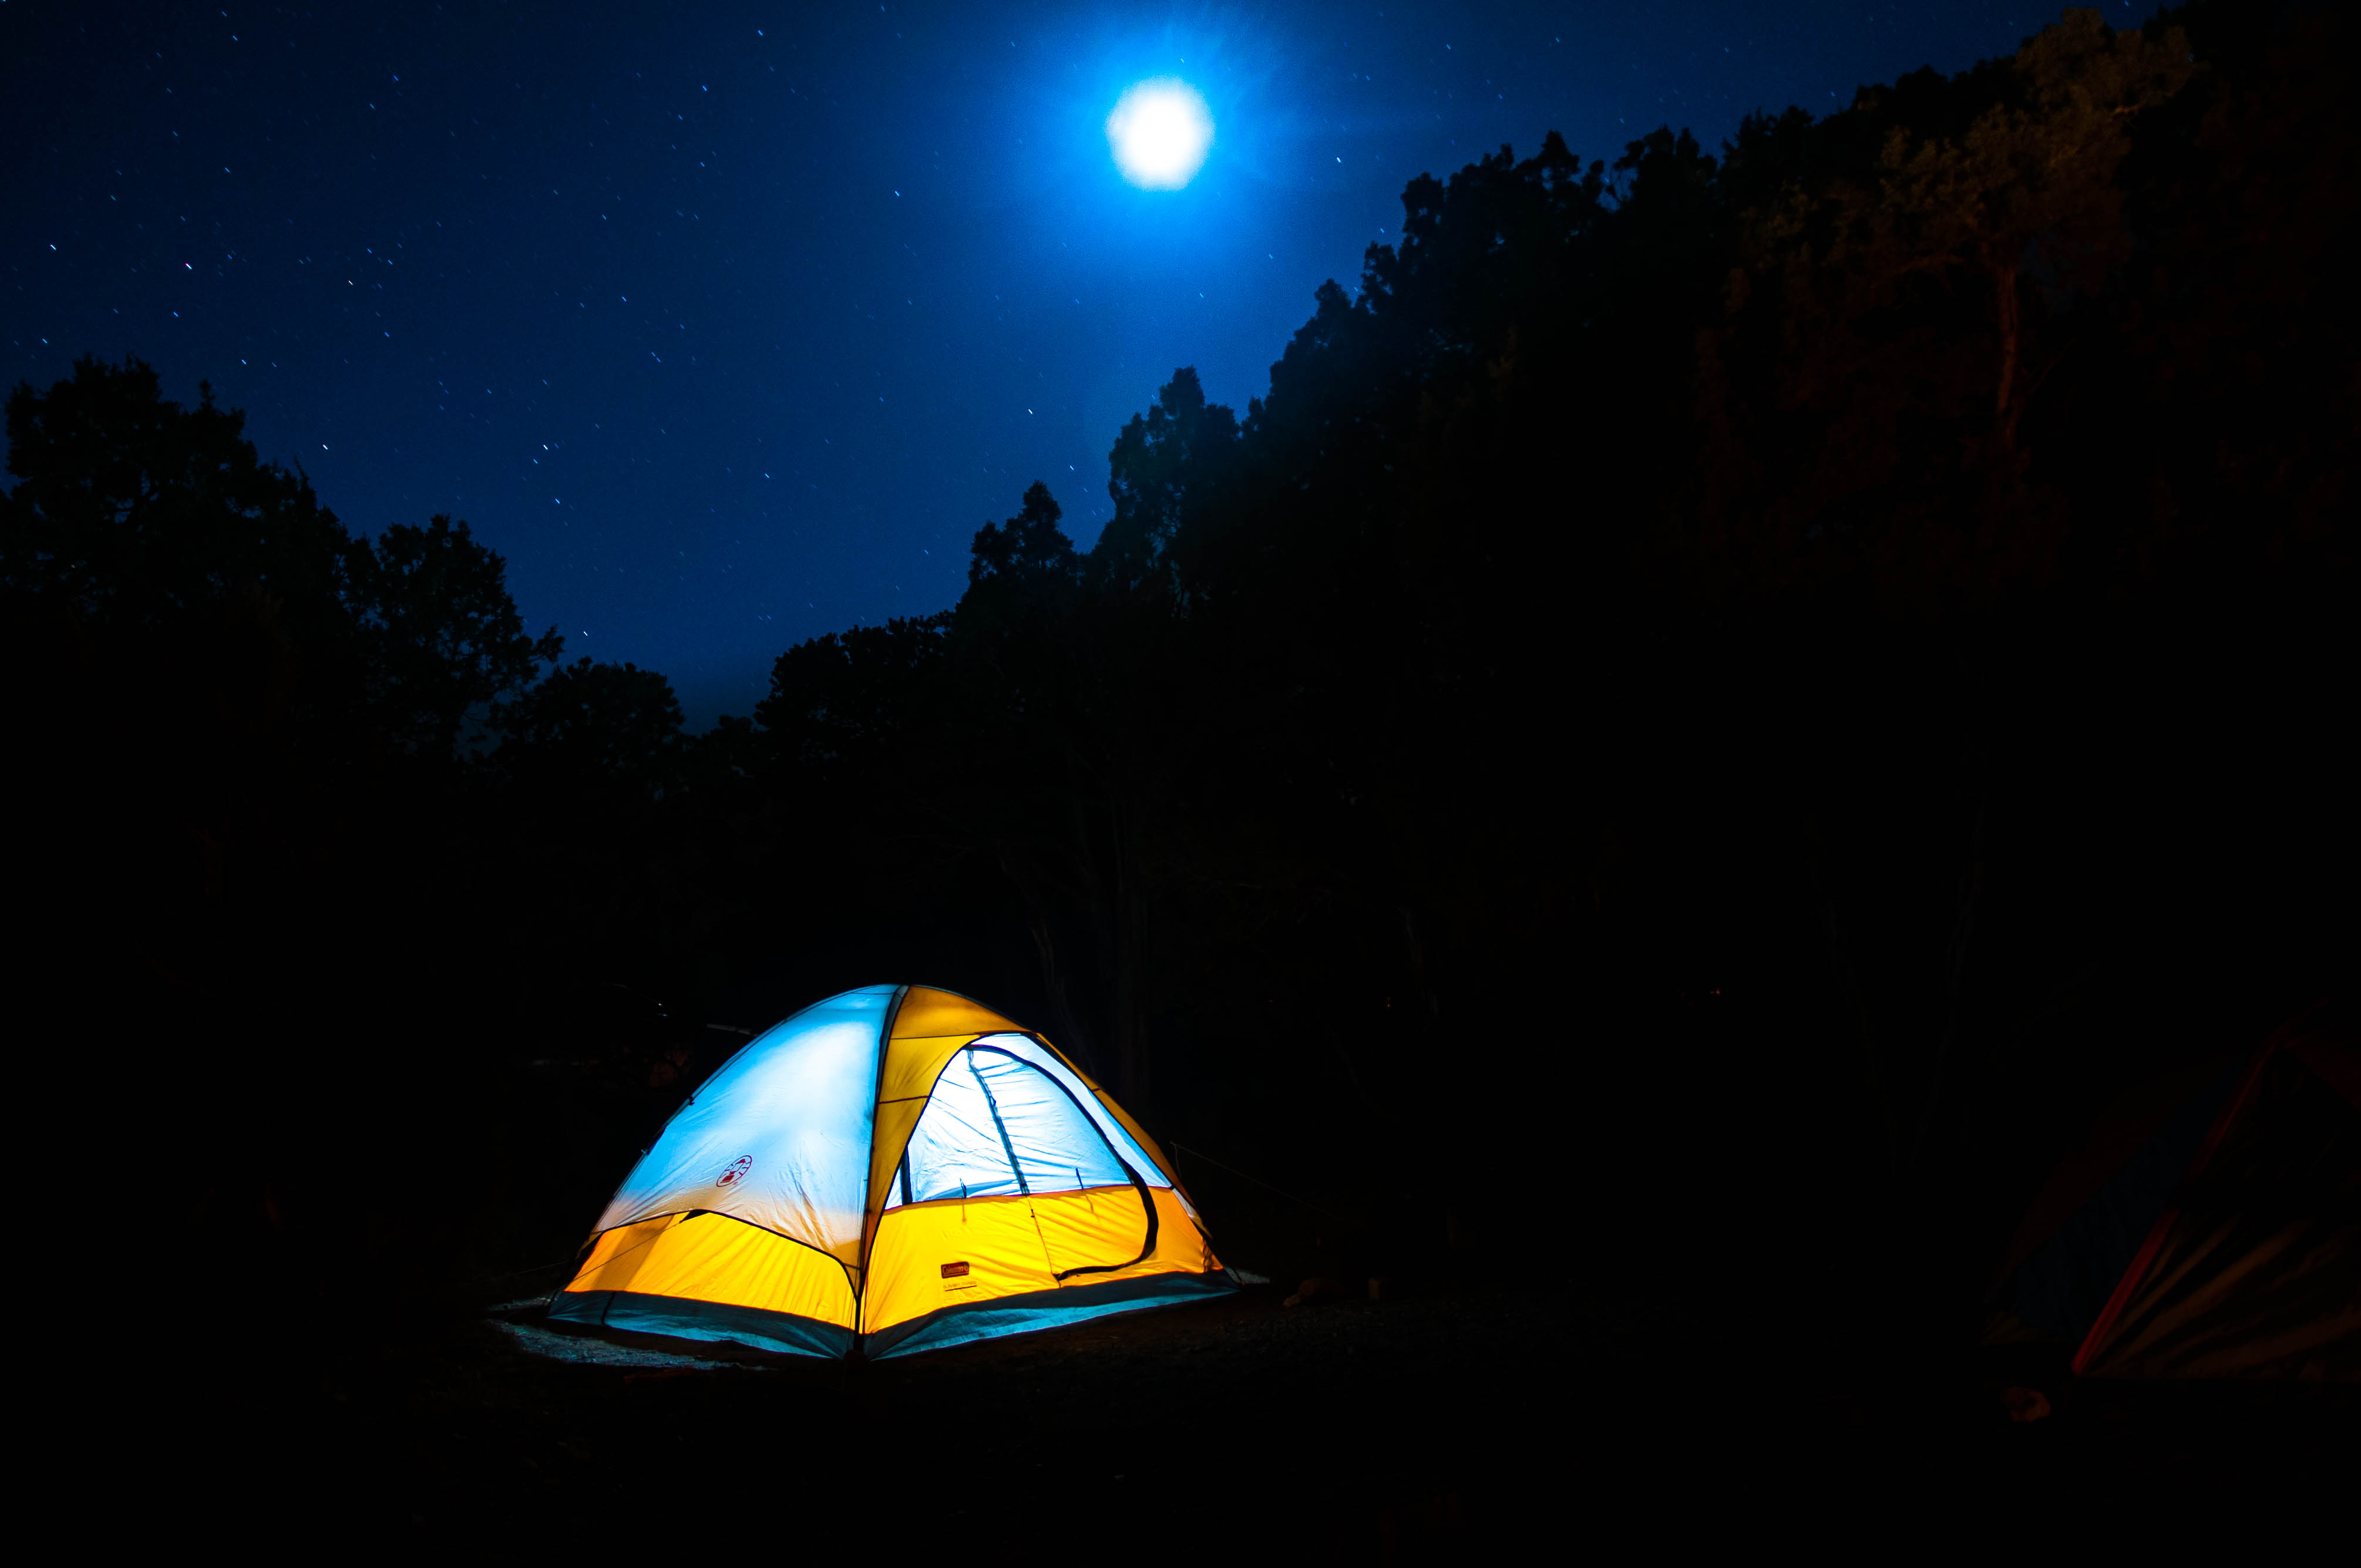 Camping Wallpaper - Camping Out At Night - HD Wallpaper 